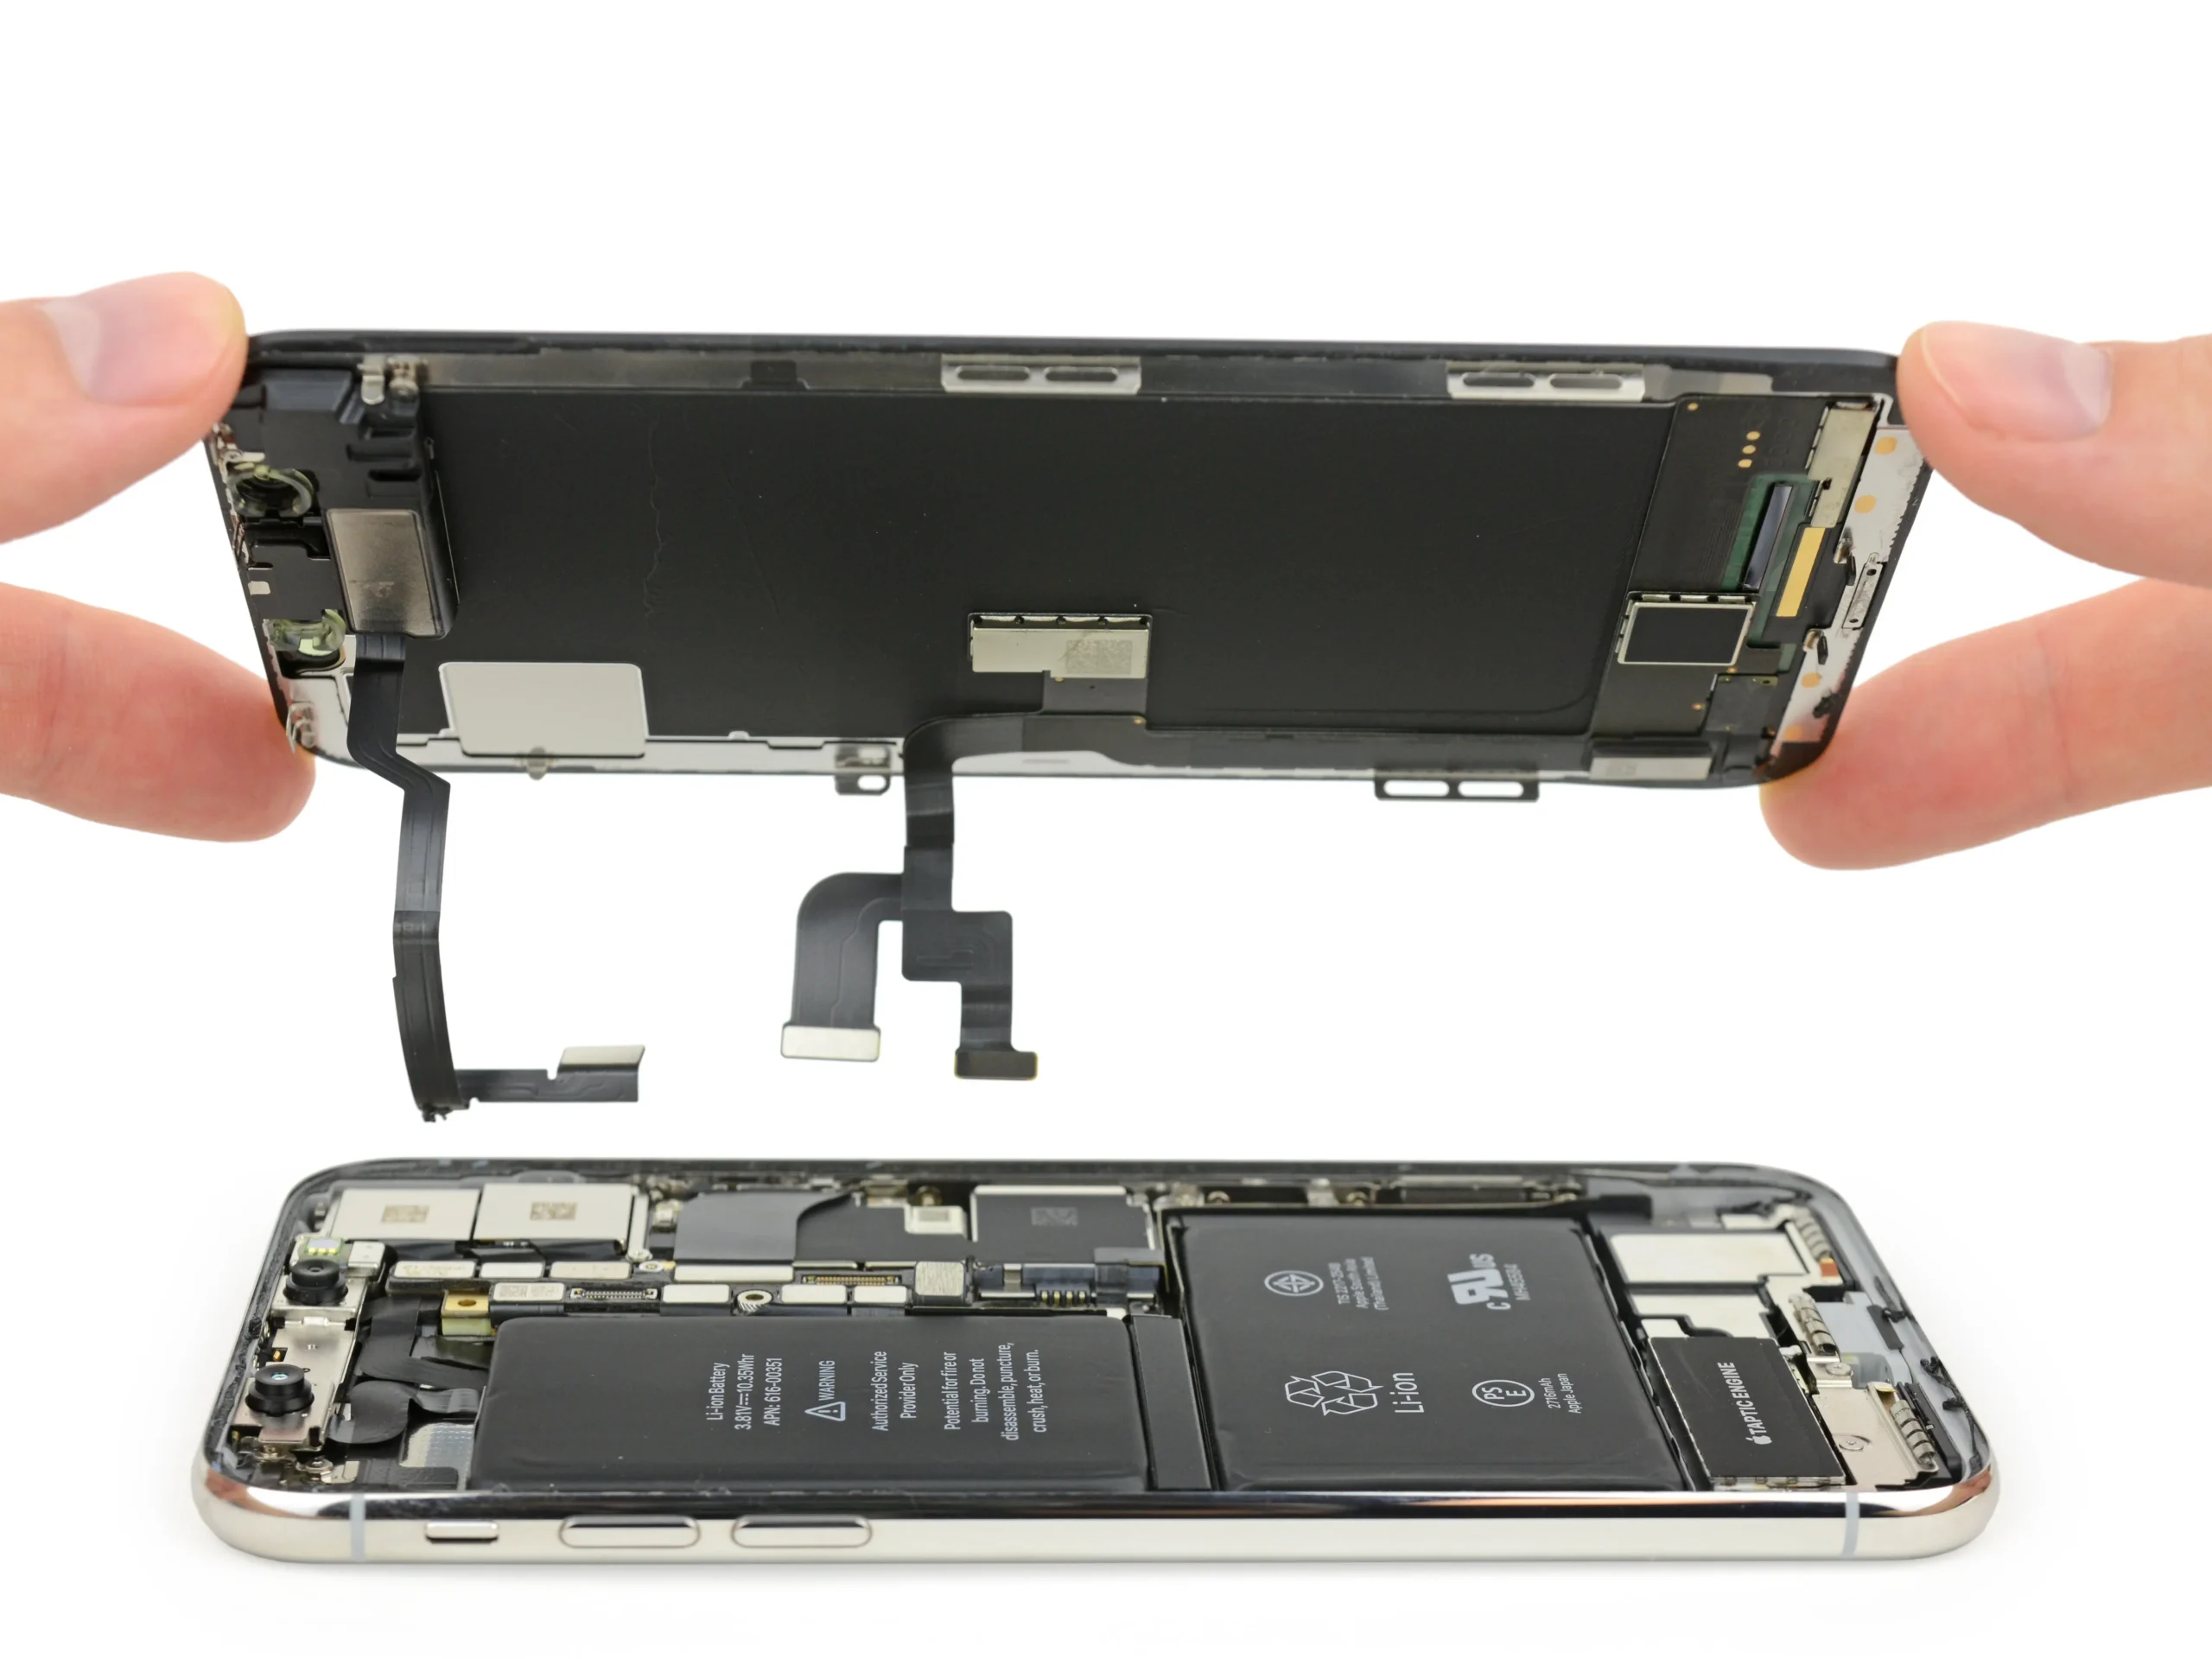 arreglar pantalla iphone x - Qué pasa si se le cambia la pantalla a un iPhone X